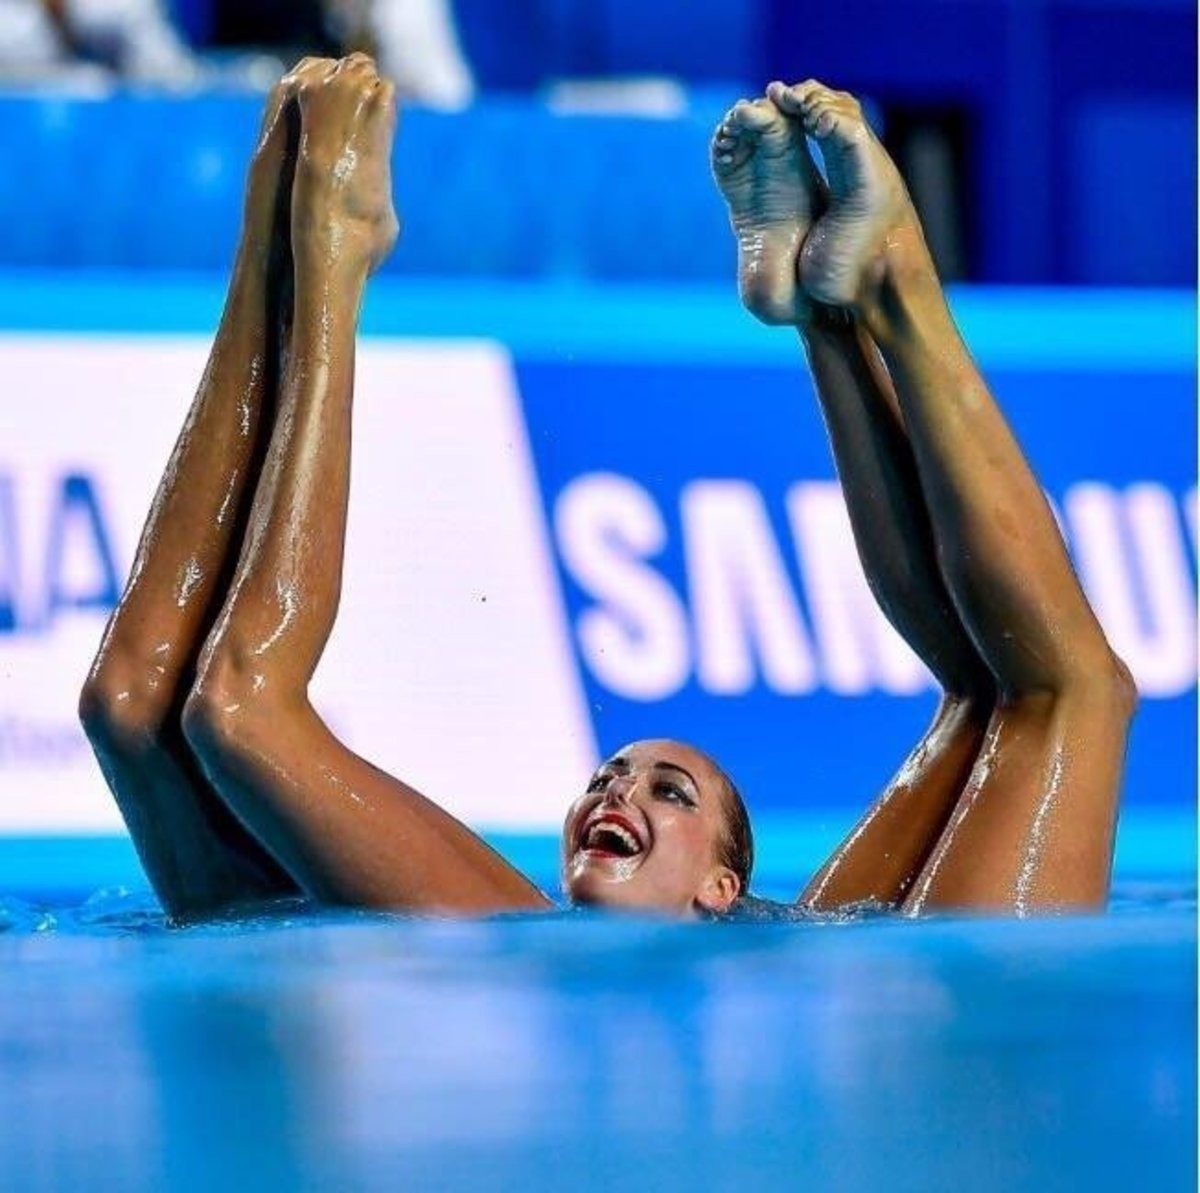 Camel toe swimmer Swimmer, 17,